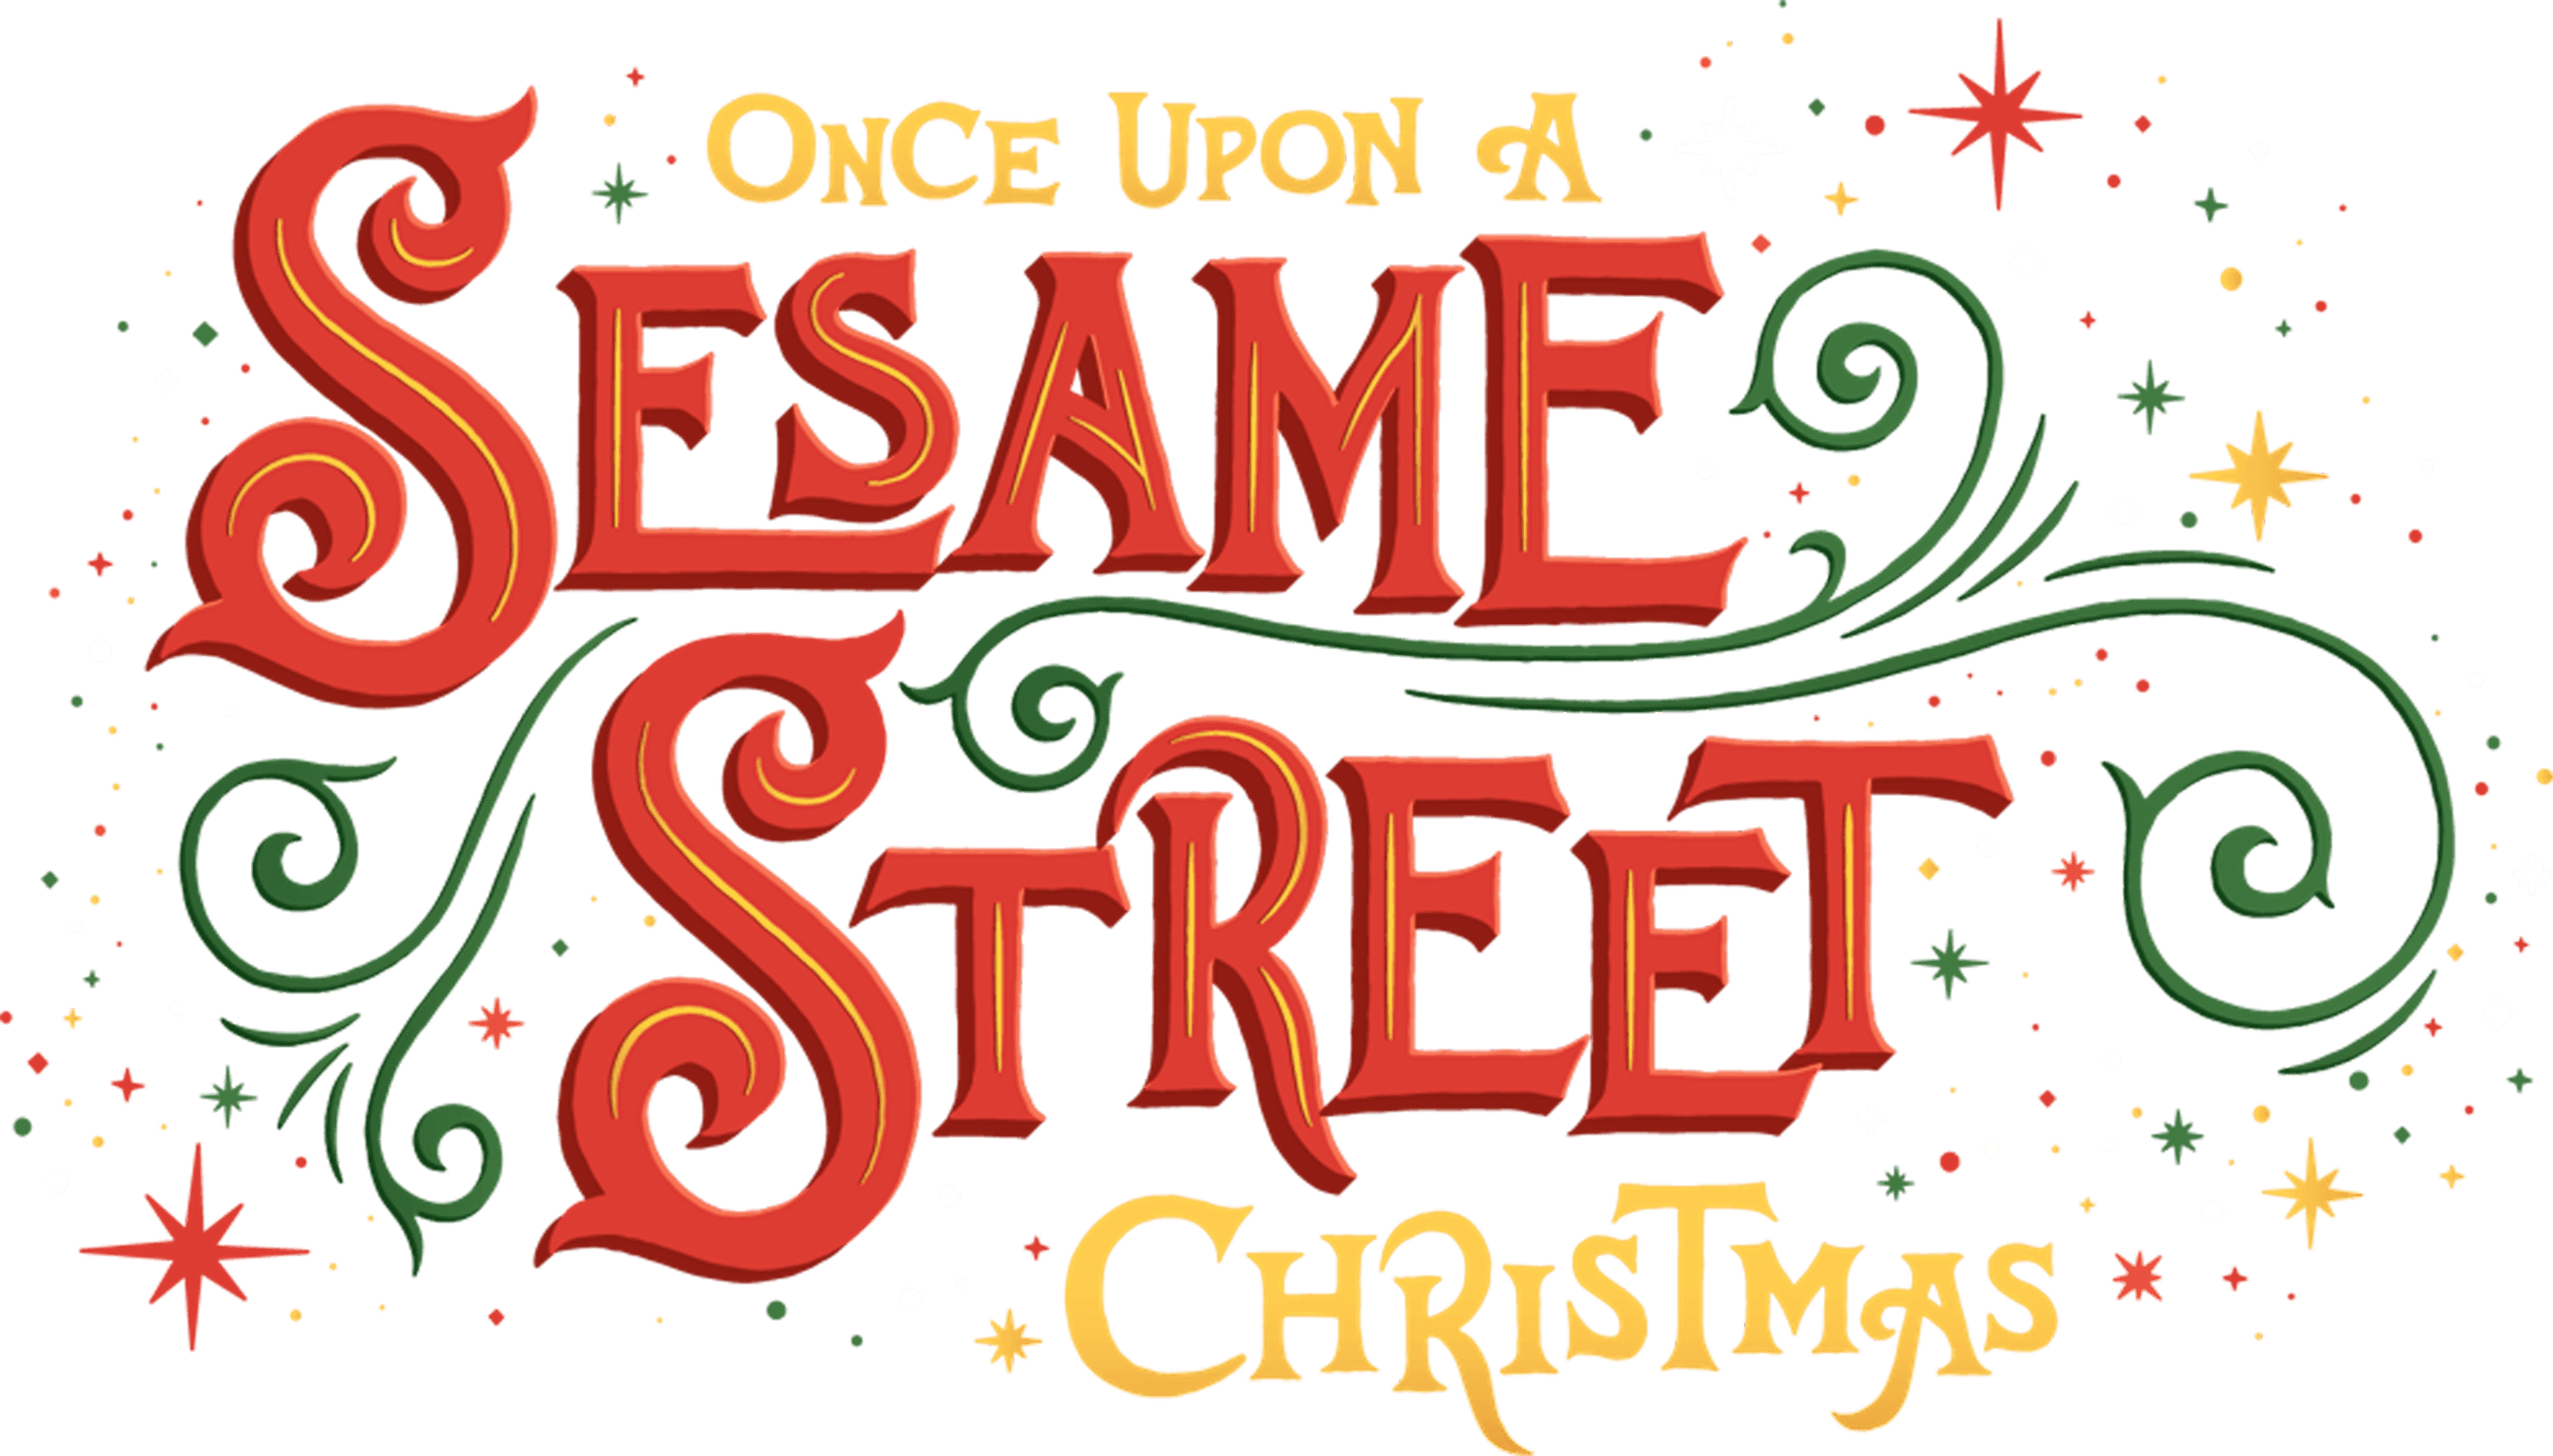 Once Upon a Sesame Street Christmas logo